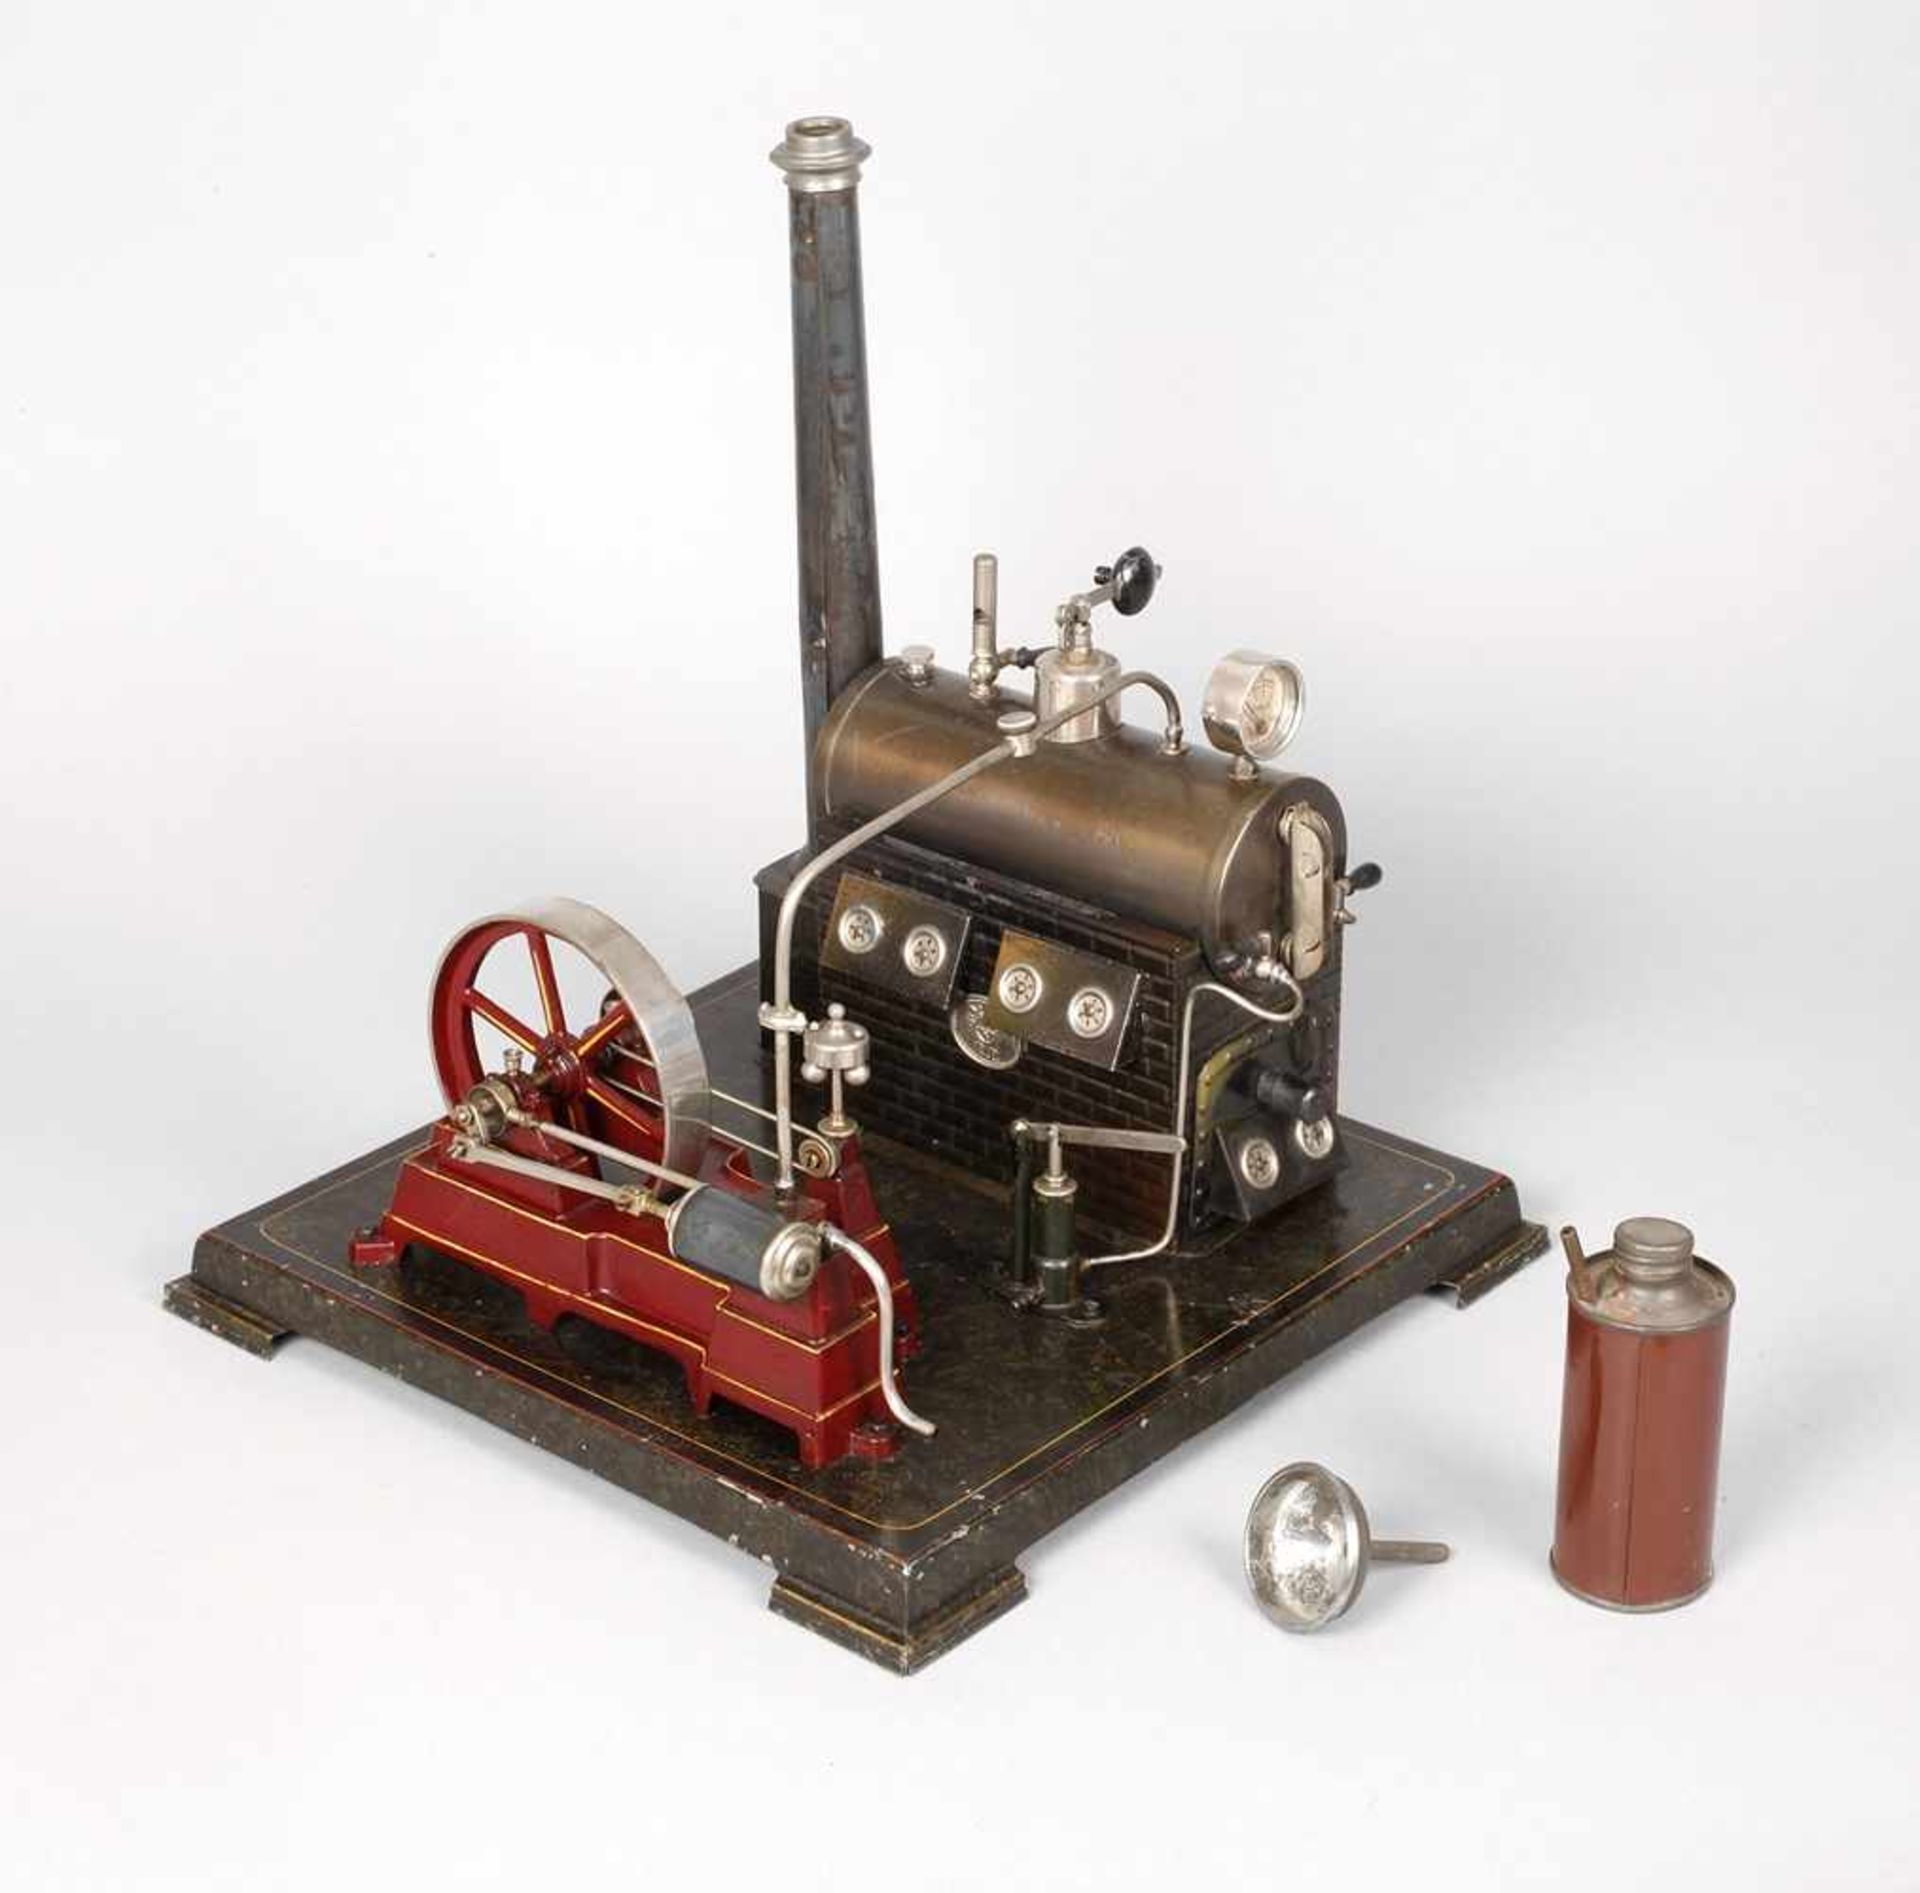 Ernst Plank liegende Dampfmaschine um 1915, gemarkt mit Firmenlogo, Blech und Guss in Schwarz-Rot